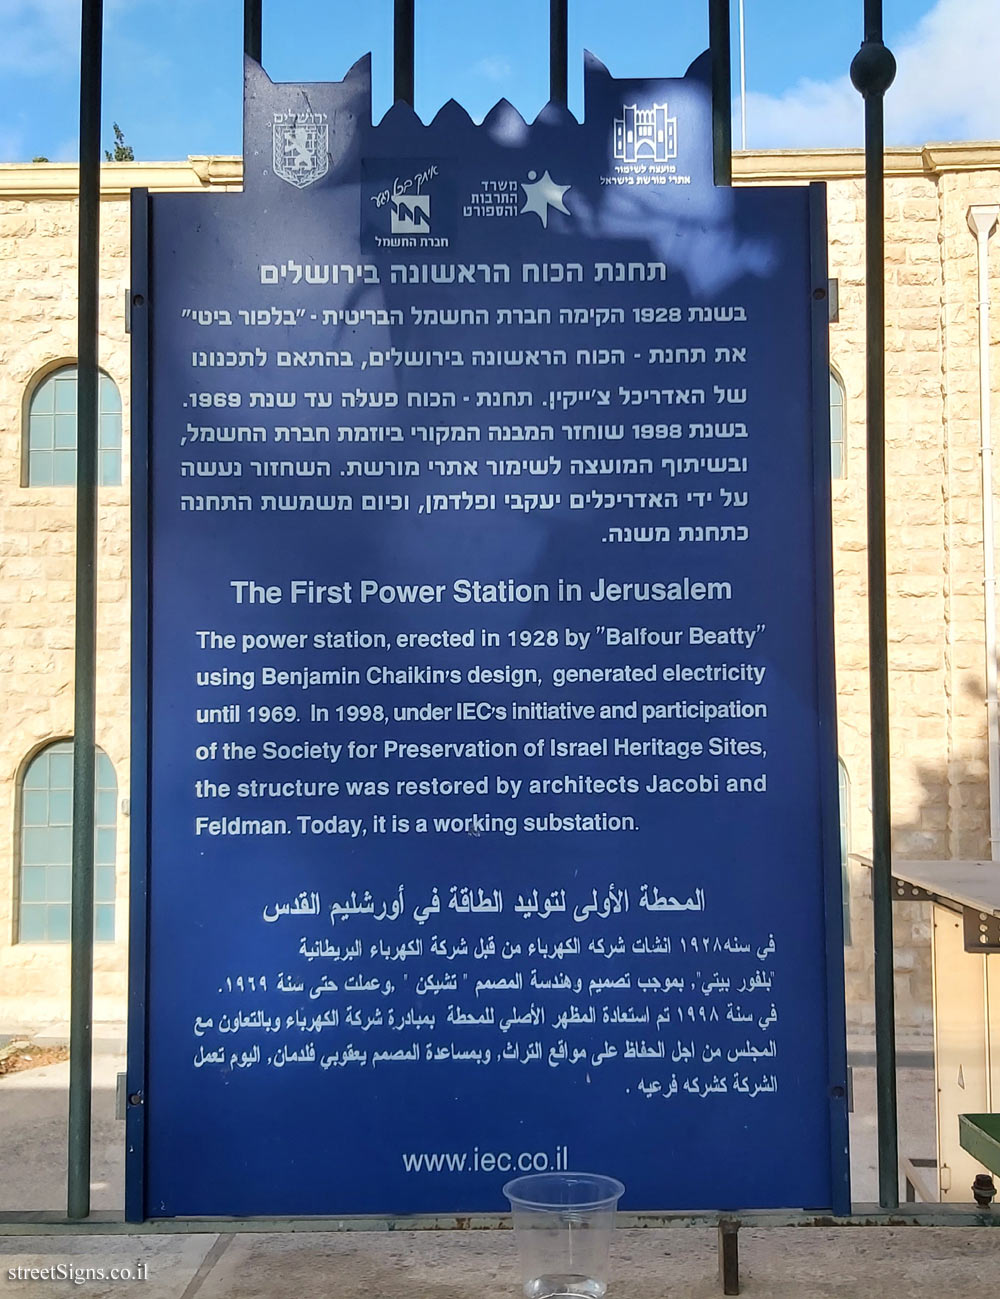 Jerusalem - Heritage Sites in Israel - The First Power Station in Jerusalem